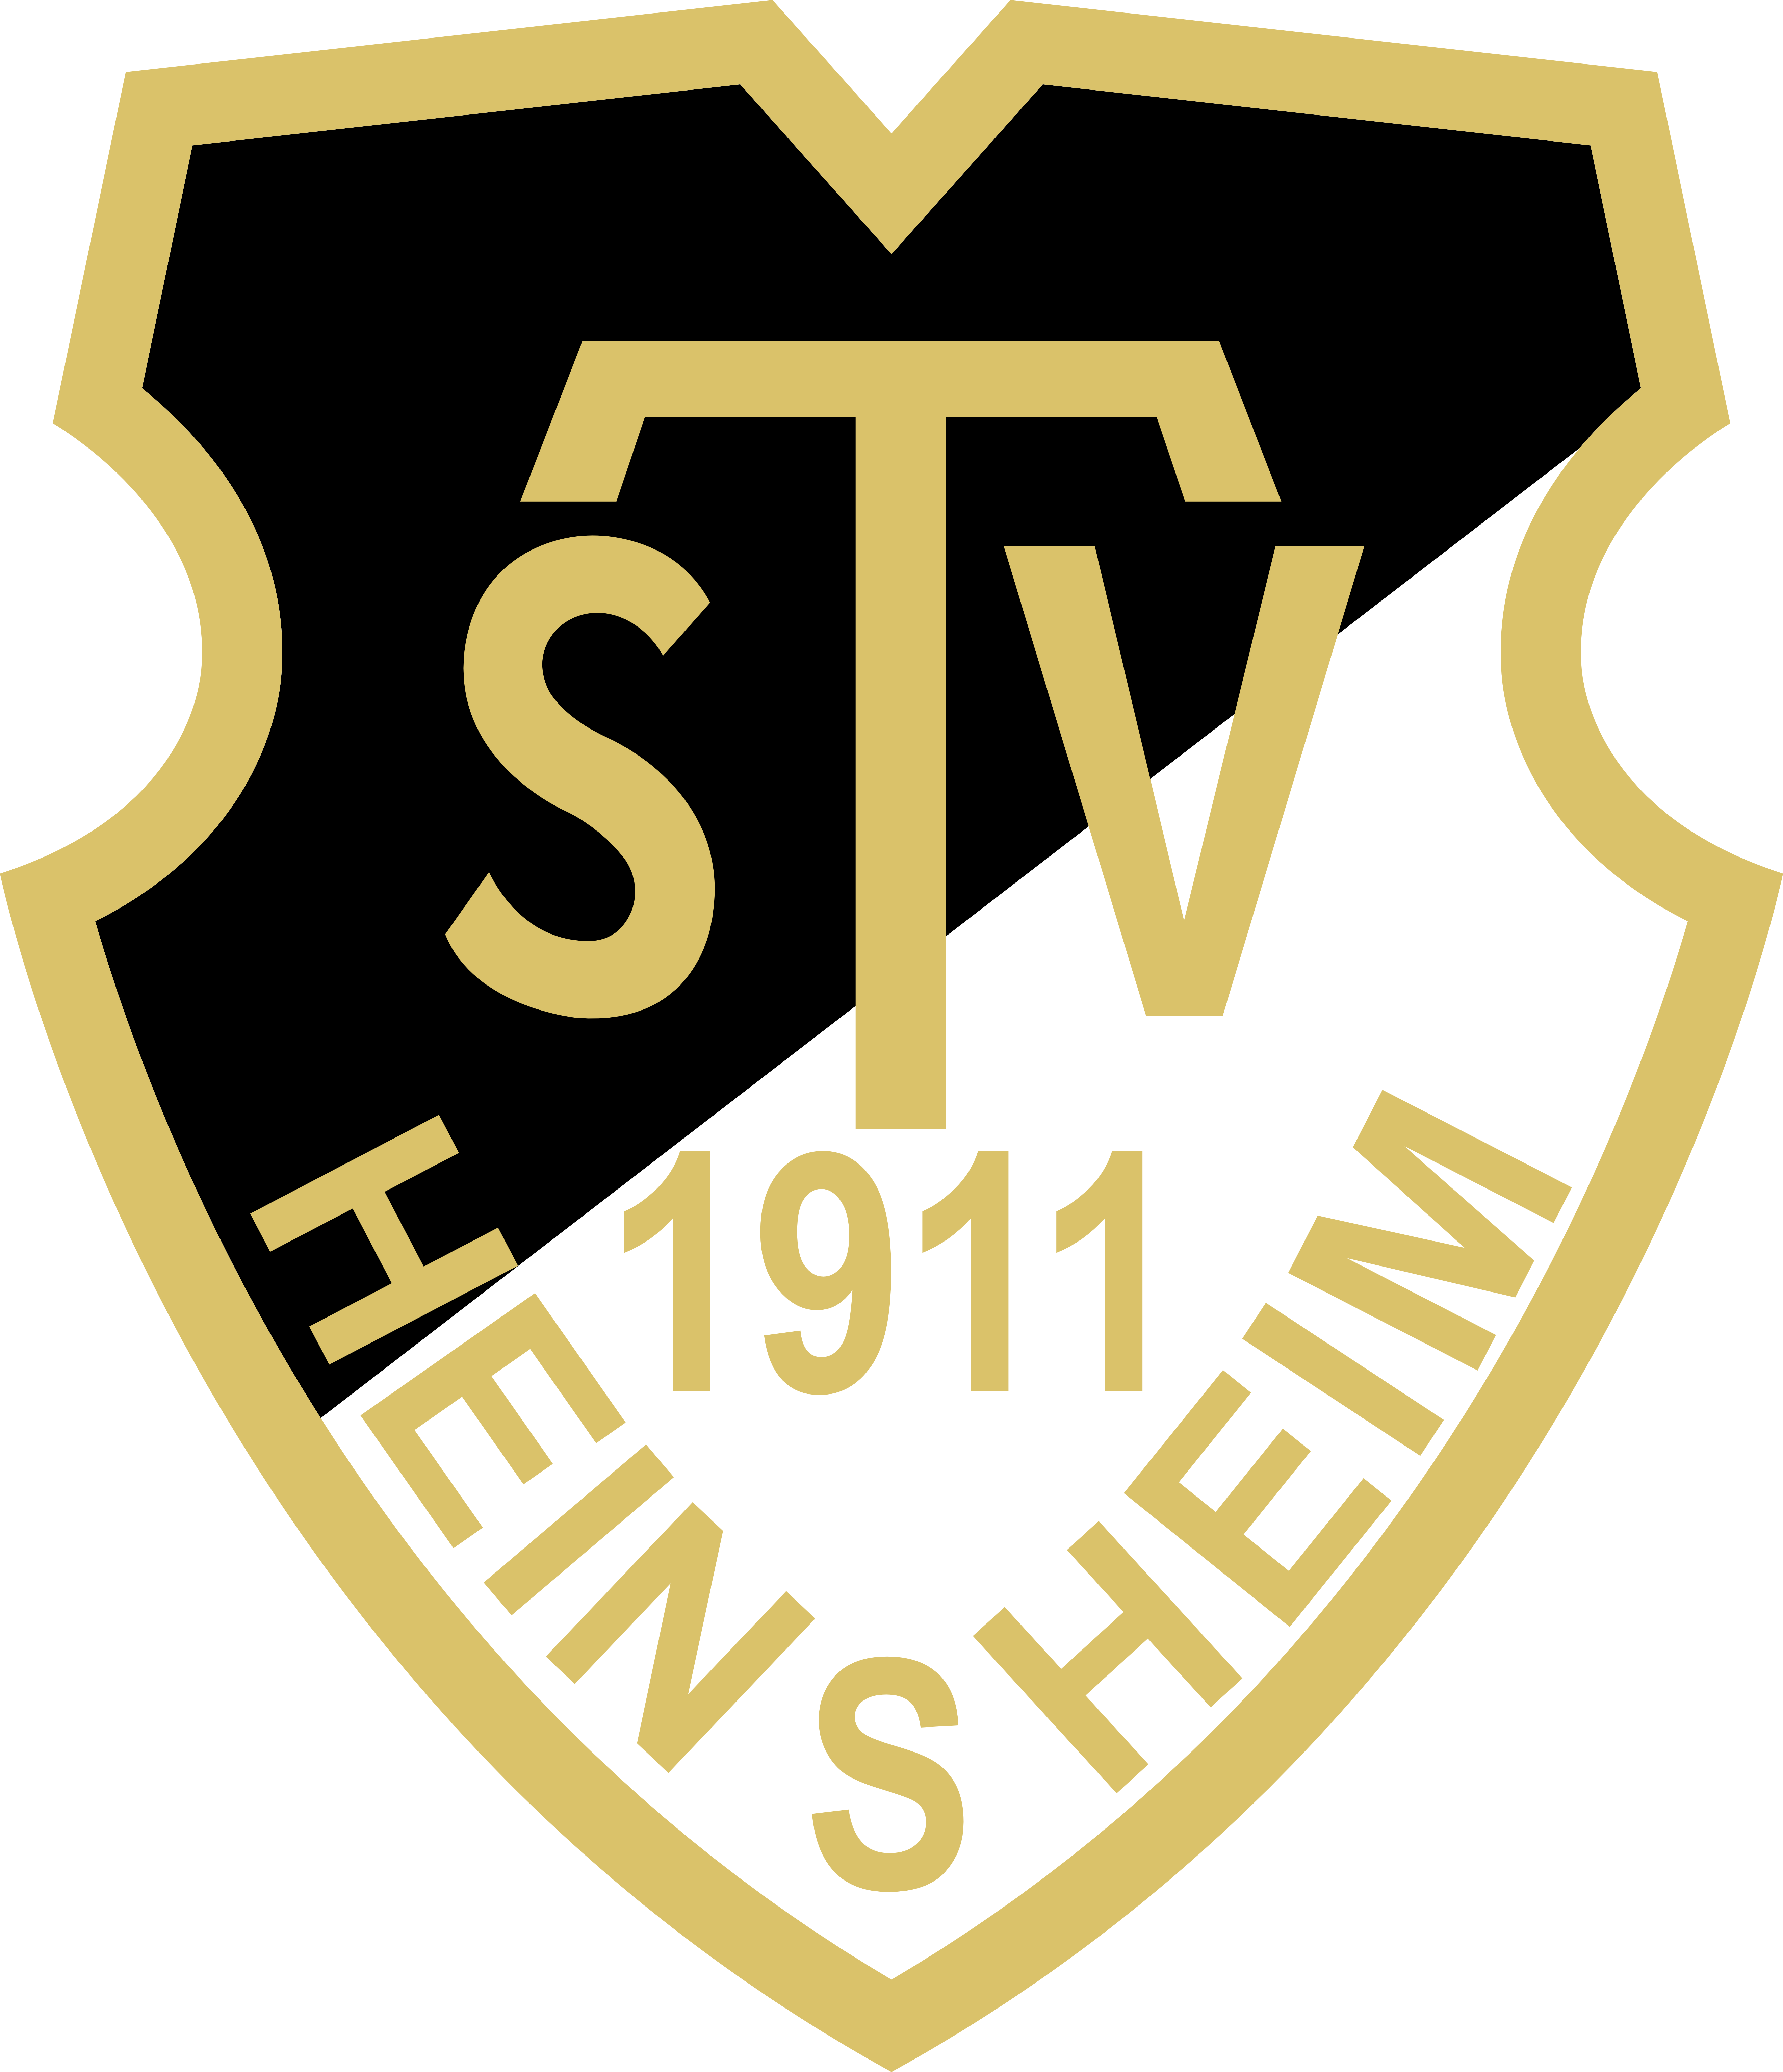 TSV Heinsheim Fussball Logo